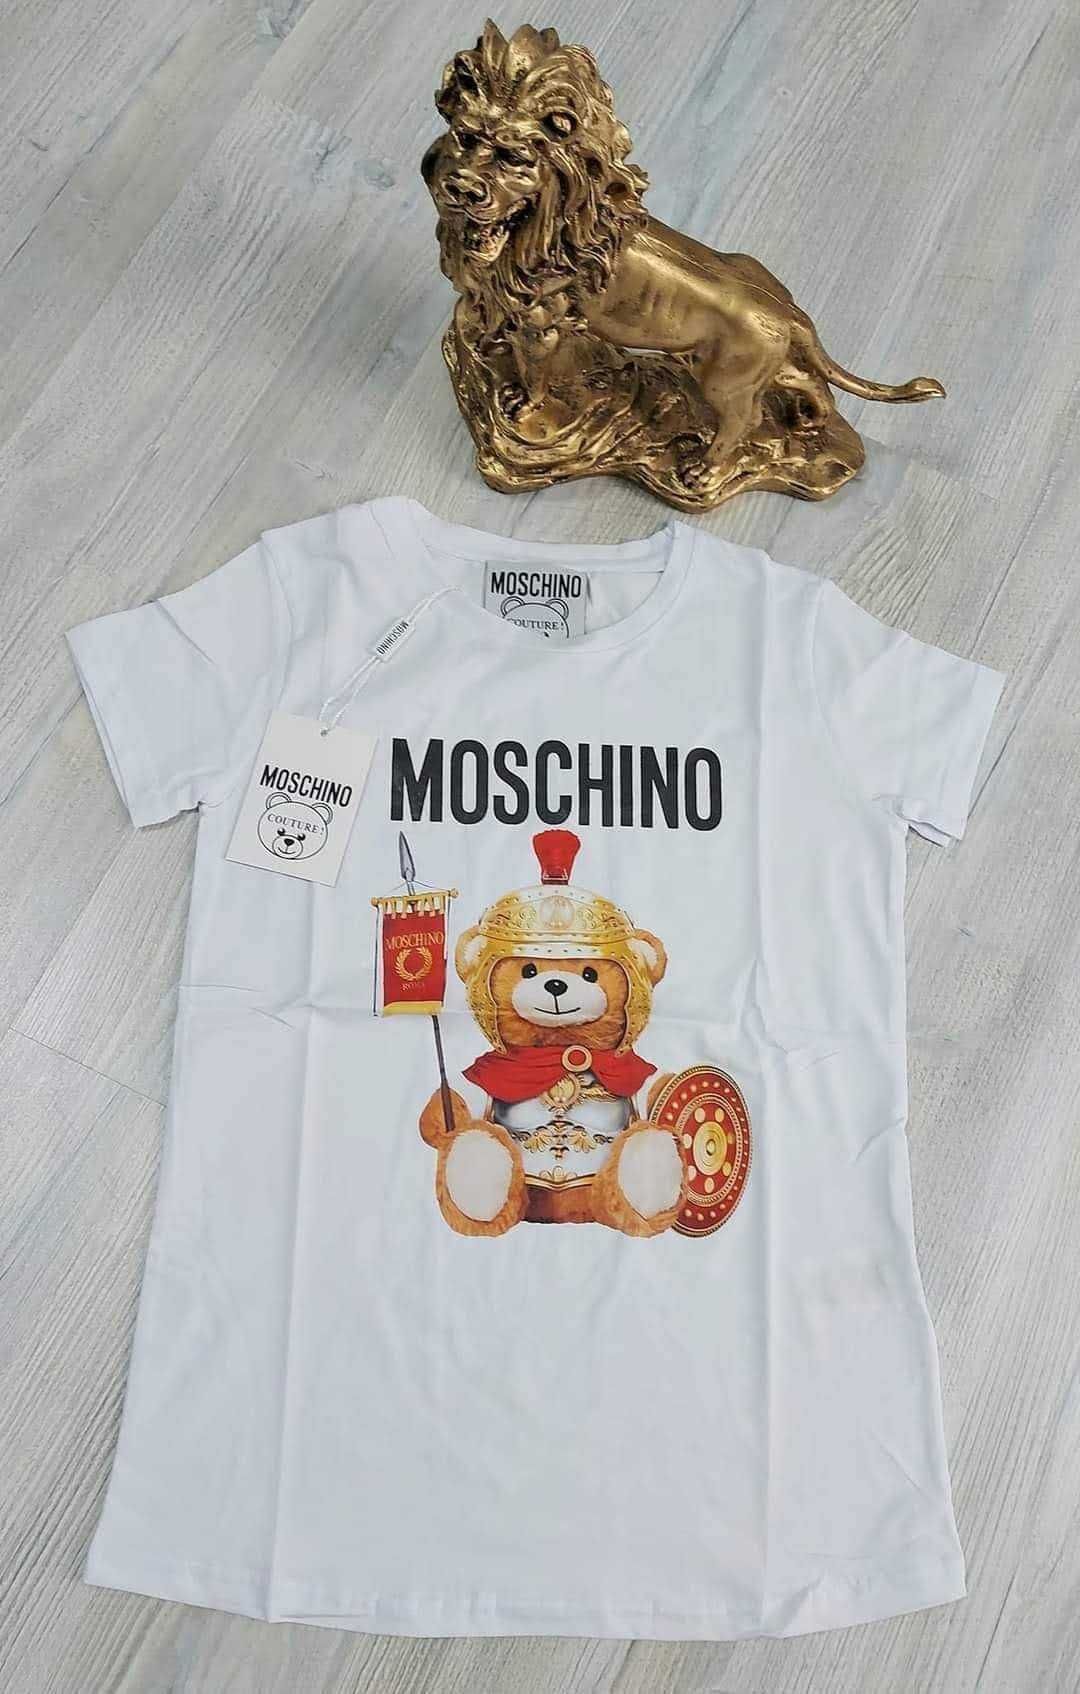 Tricouri Gucci, Moschino, Off-White din Bumbac-Produs Nou cu Eticheta